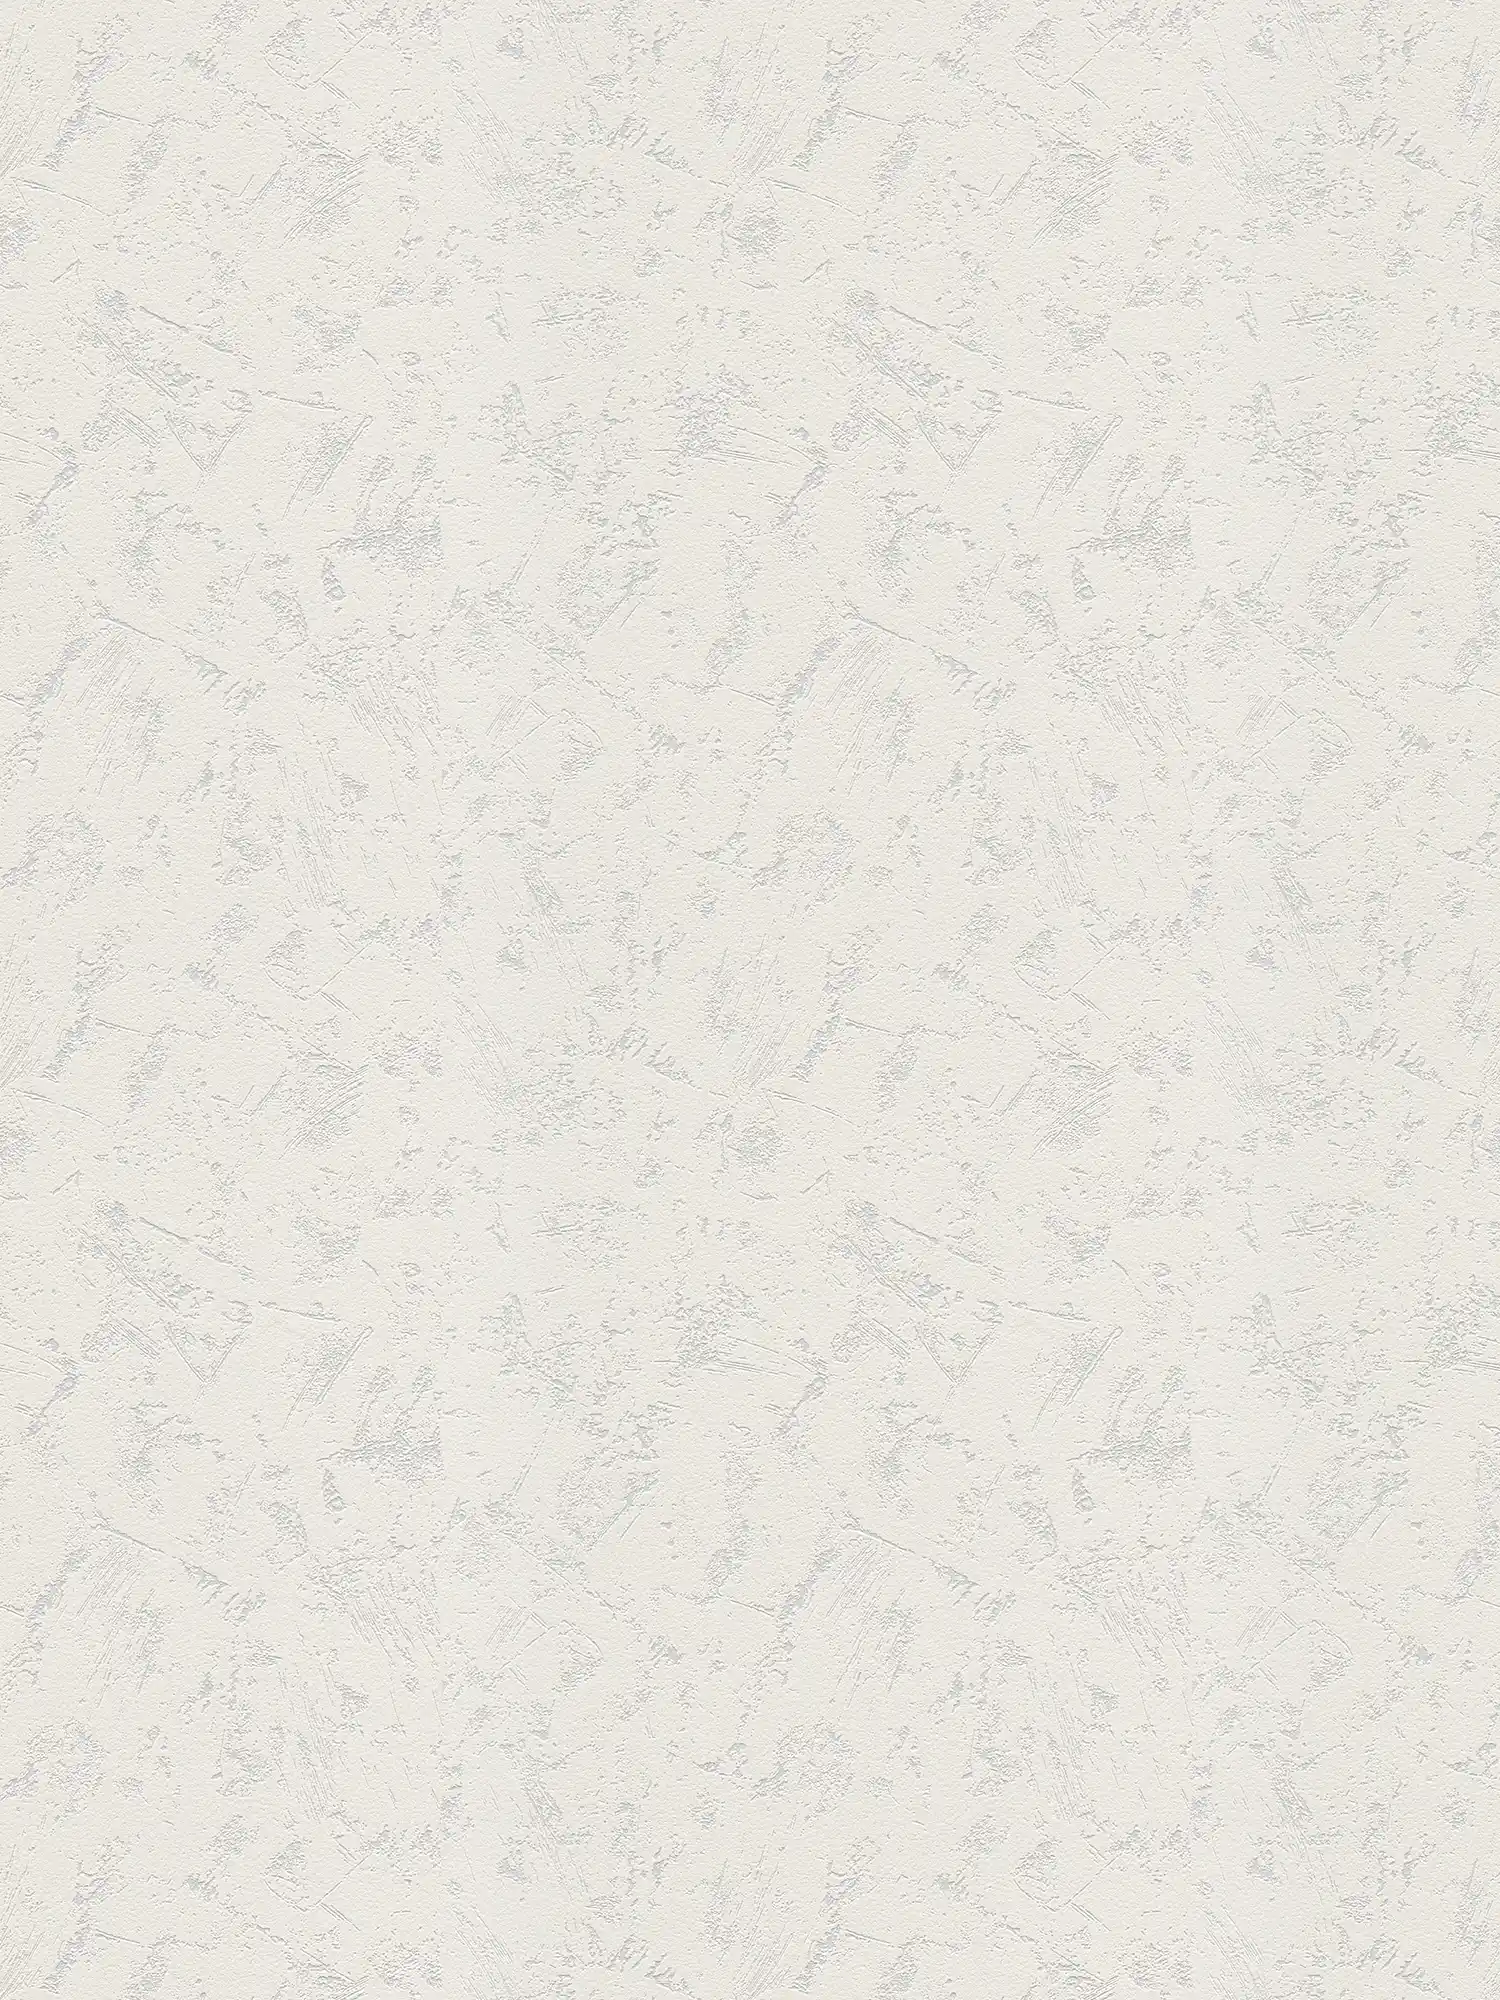 cazzuola per carta da parati effetto intonaco con texture a strappo - bianco
